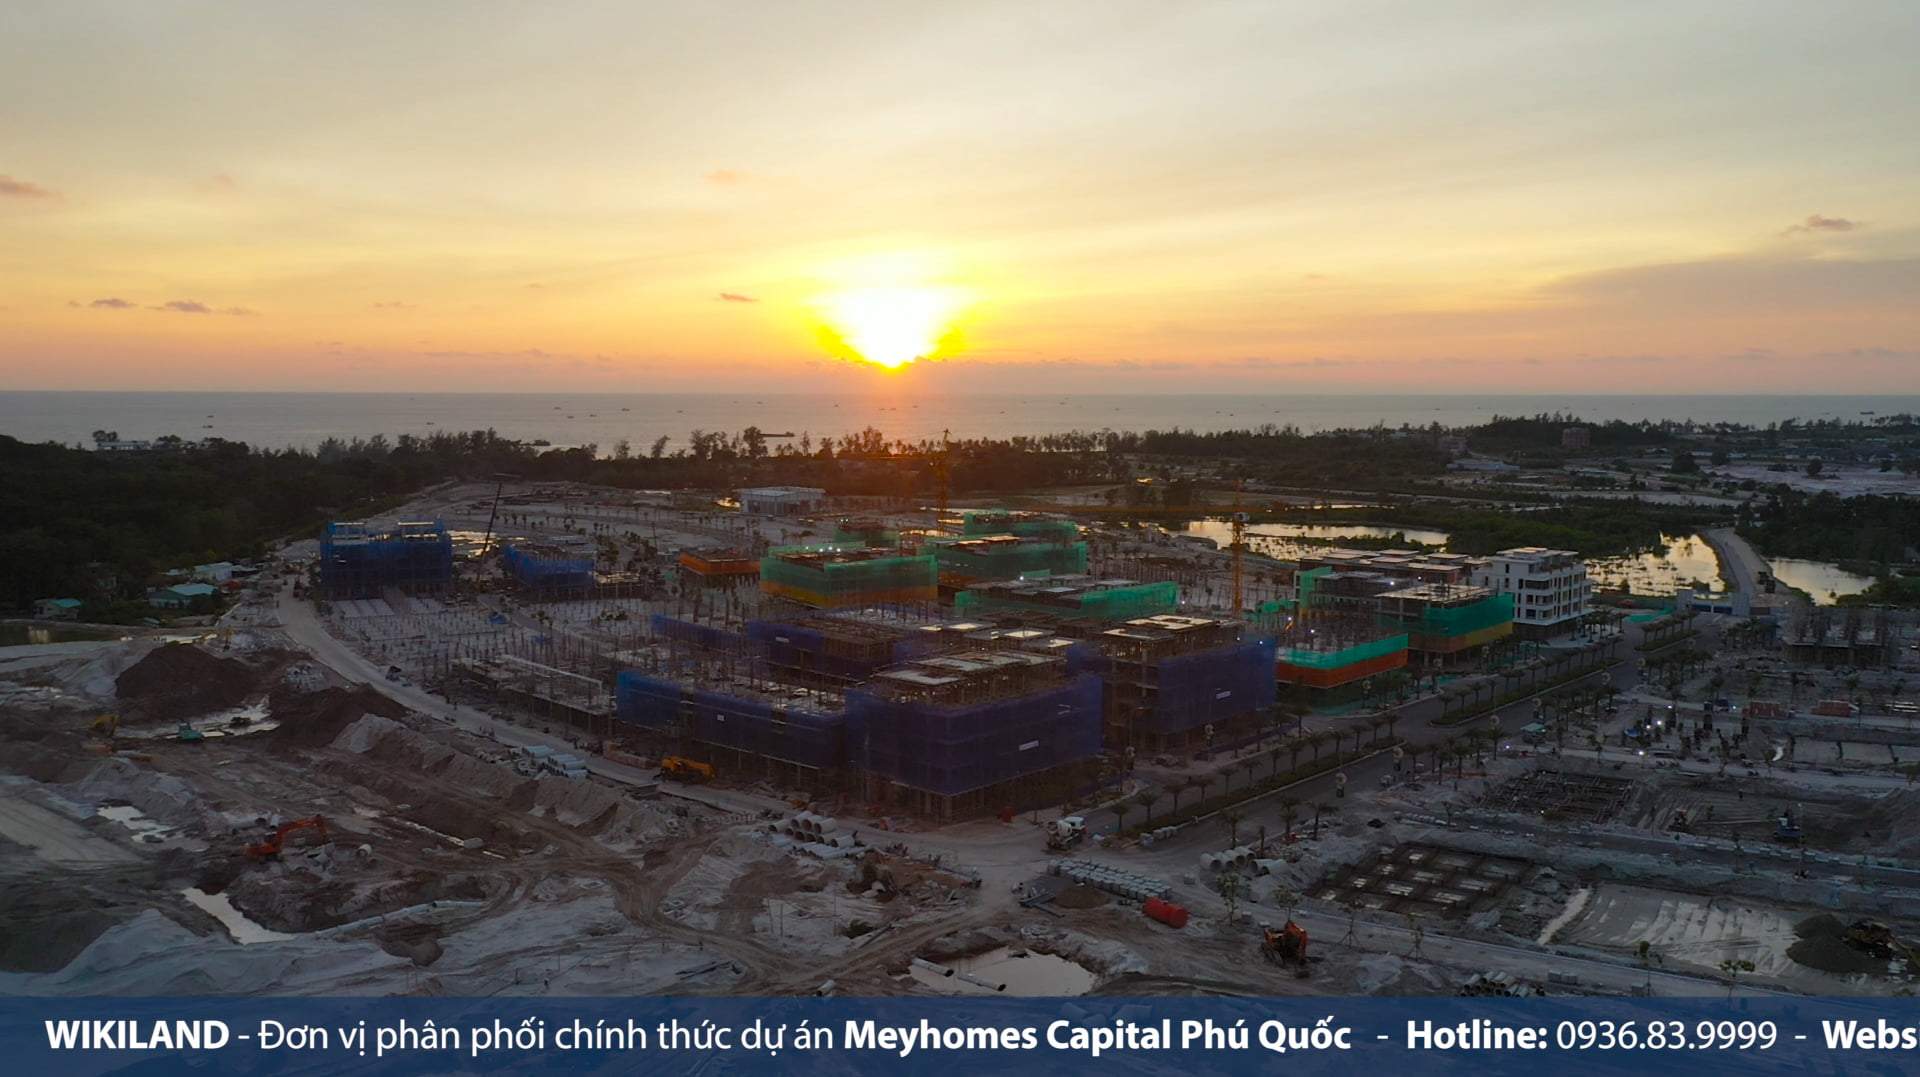 Cập nhật tiến độ dự án Meyhomes Capital Phú Quốc 24/05/2022